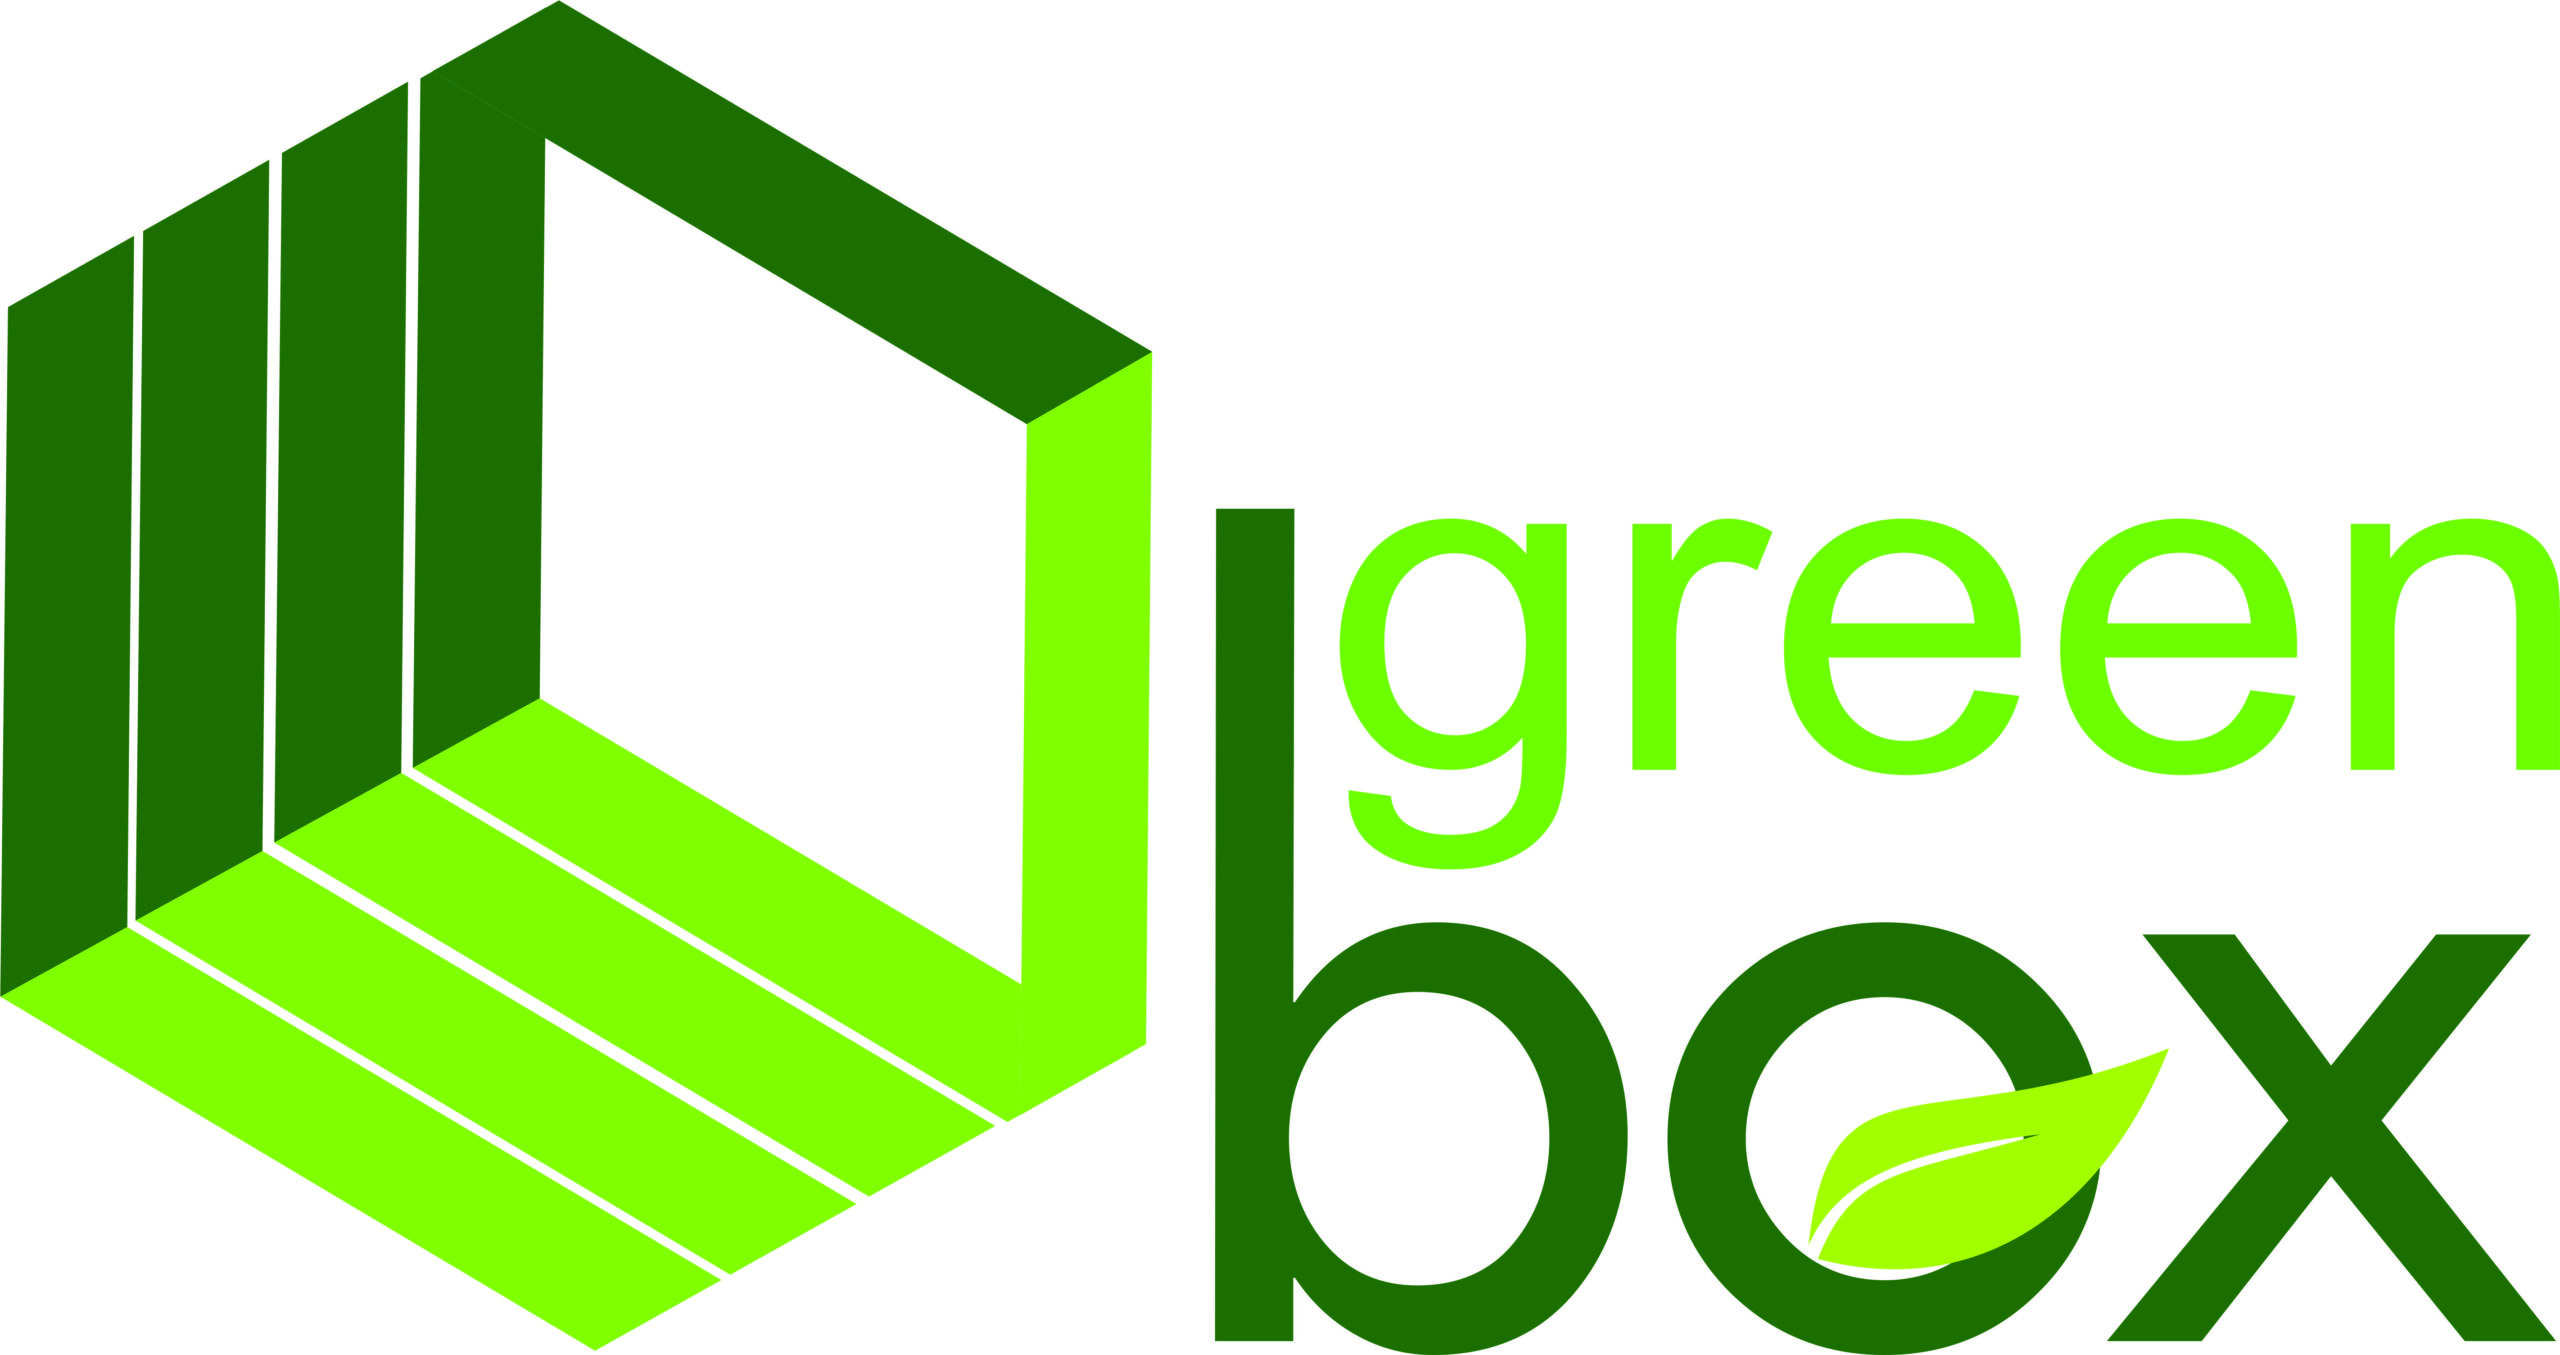 Xưởng sản xuất hộp gỗ Green Box